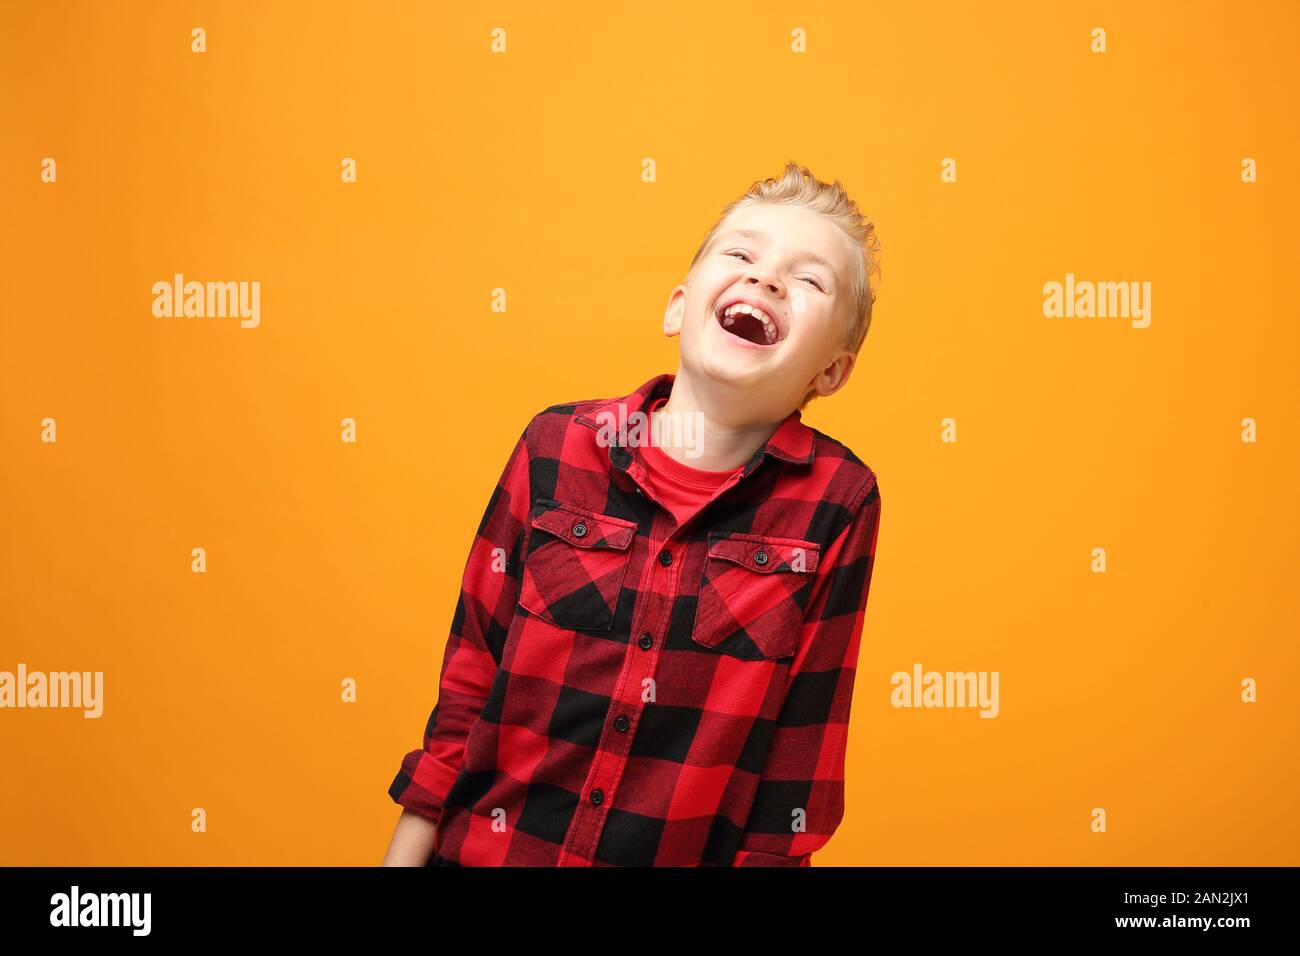 Felicità e gioia, emozioni di un bambino. Giovane bel ragazzo caucasico sorridente nella camicia rossa sullo sfondo giallo. Orizzontale, dritto. Foto Stock